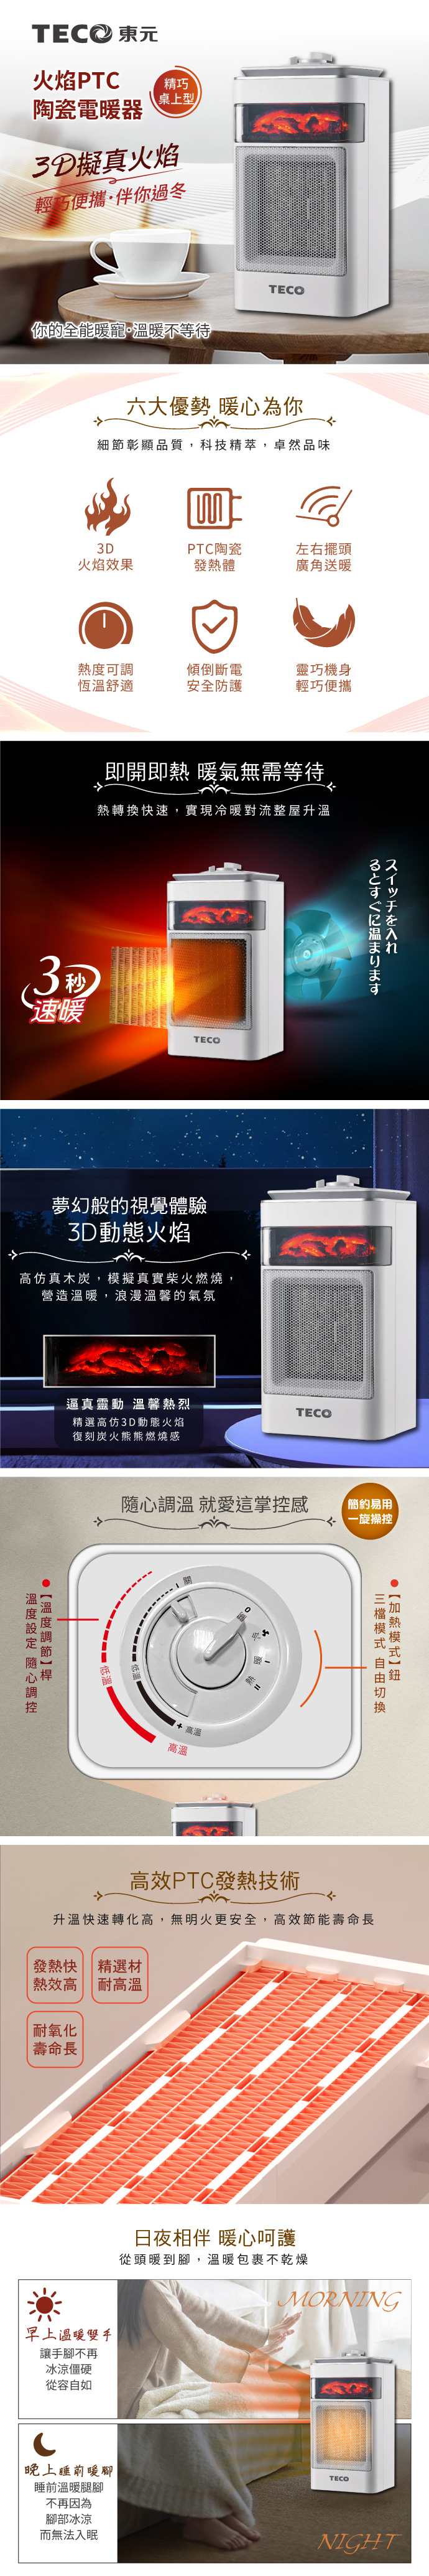 【TECO東元】3D擬真火焰PTC陶瓷電暖器 XYFYN4001CB